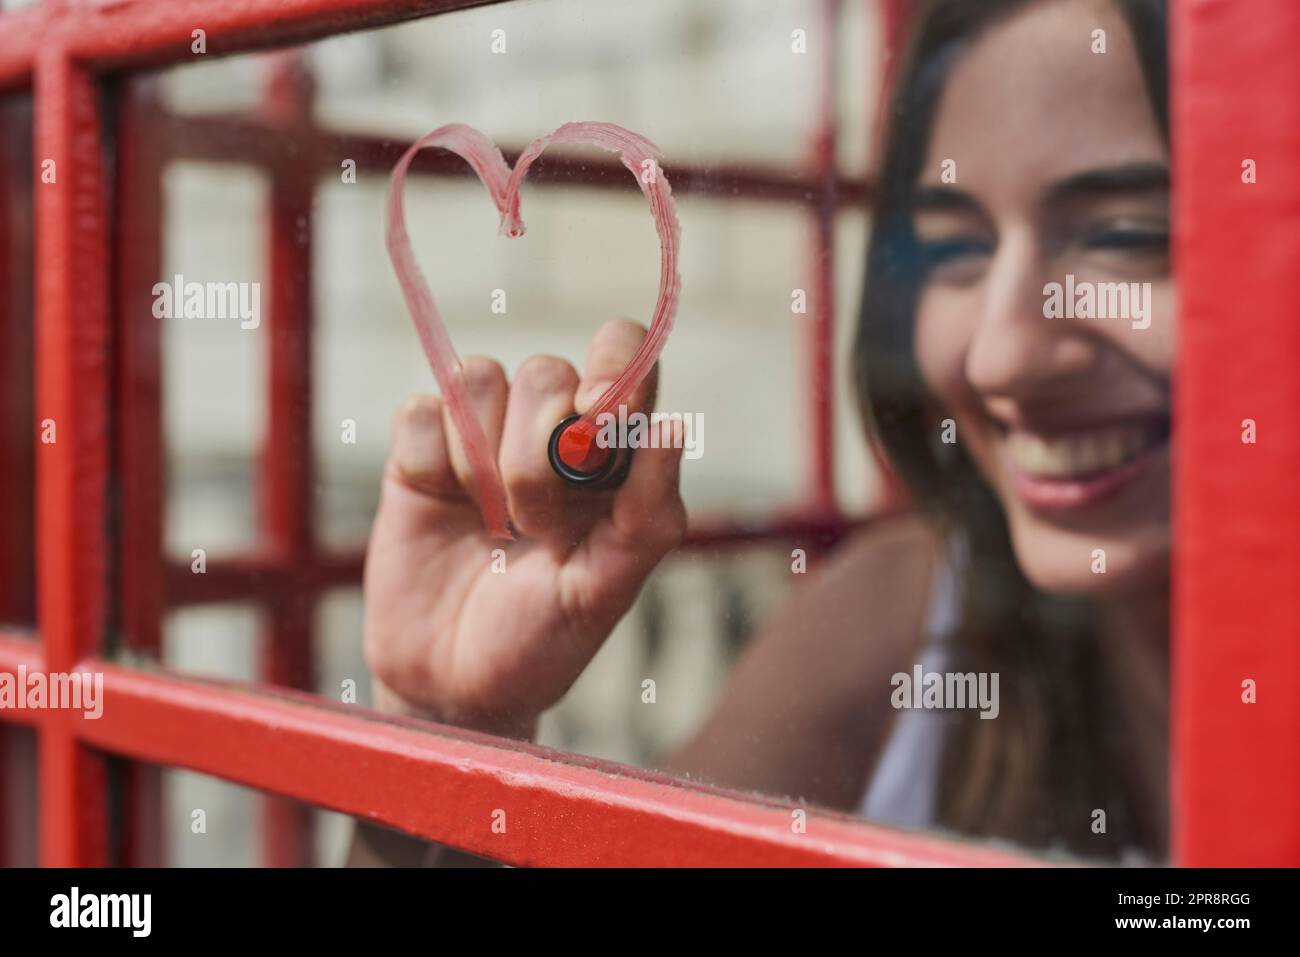 London, du hast mein Herz. Eine junge Frau, die ein Herz mit rotem Lippenstift auf einer Telefonzelle zeichnet, während sie die Stadt London erkundet. Stockfoto